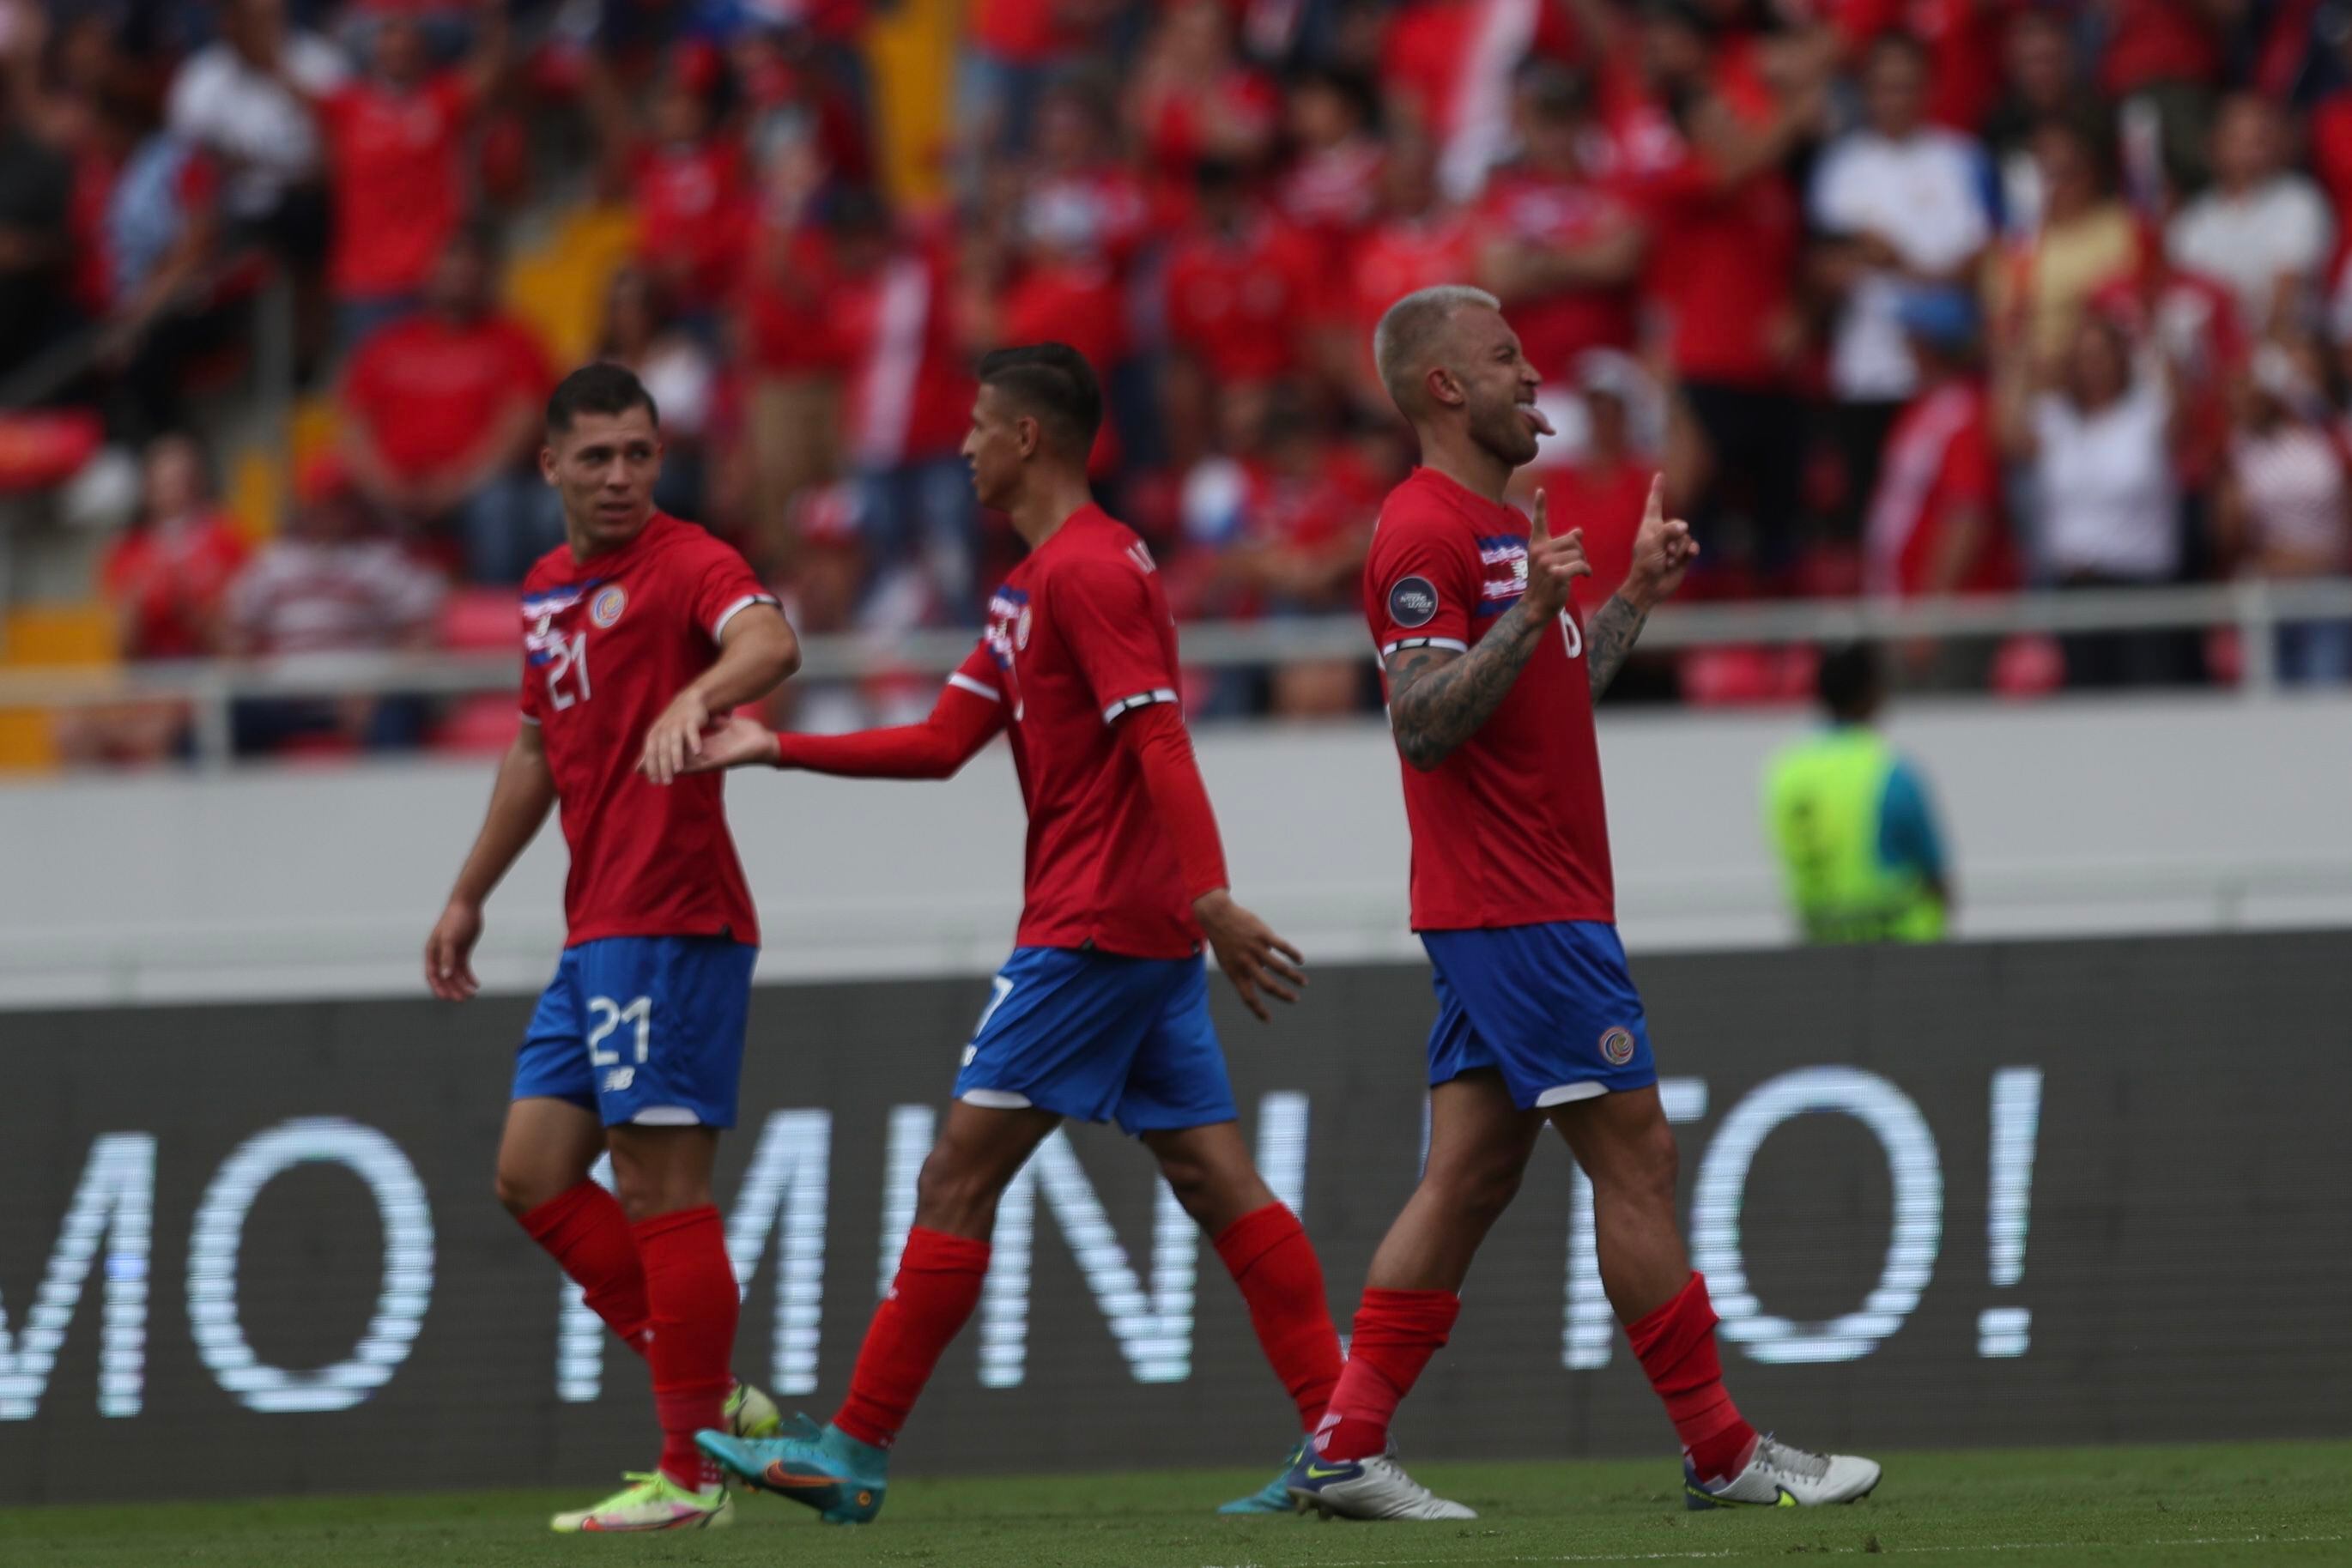 La Selección de Costa Rica disputará la primera fase de la Copa Oro del 26 de junio al 4 de julio. Antes tiene dos amistosos, contra Guatemala y Ecuador.